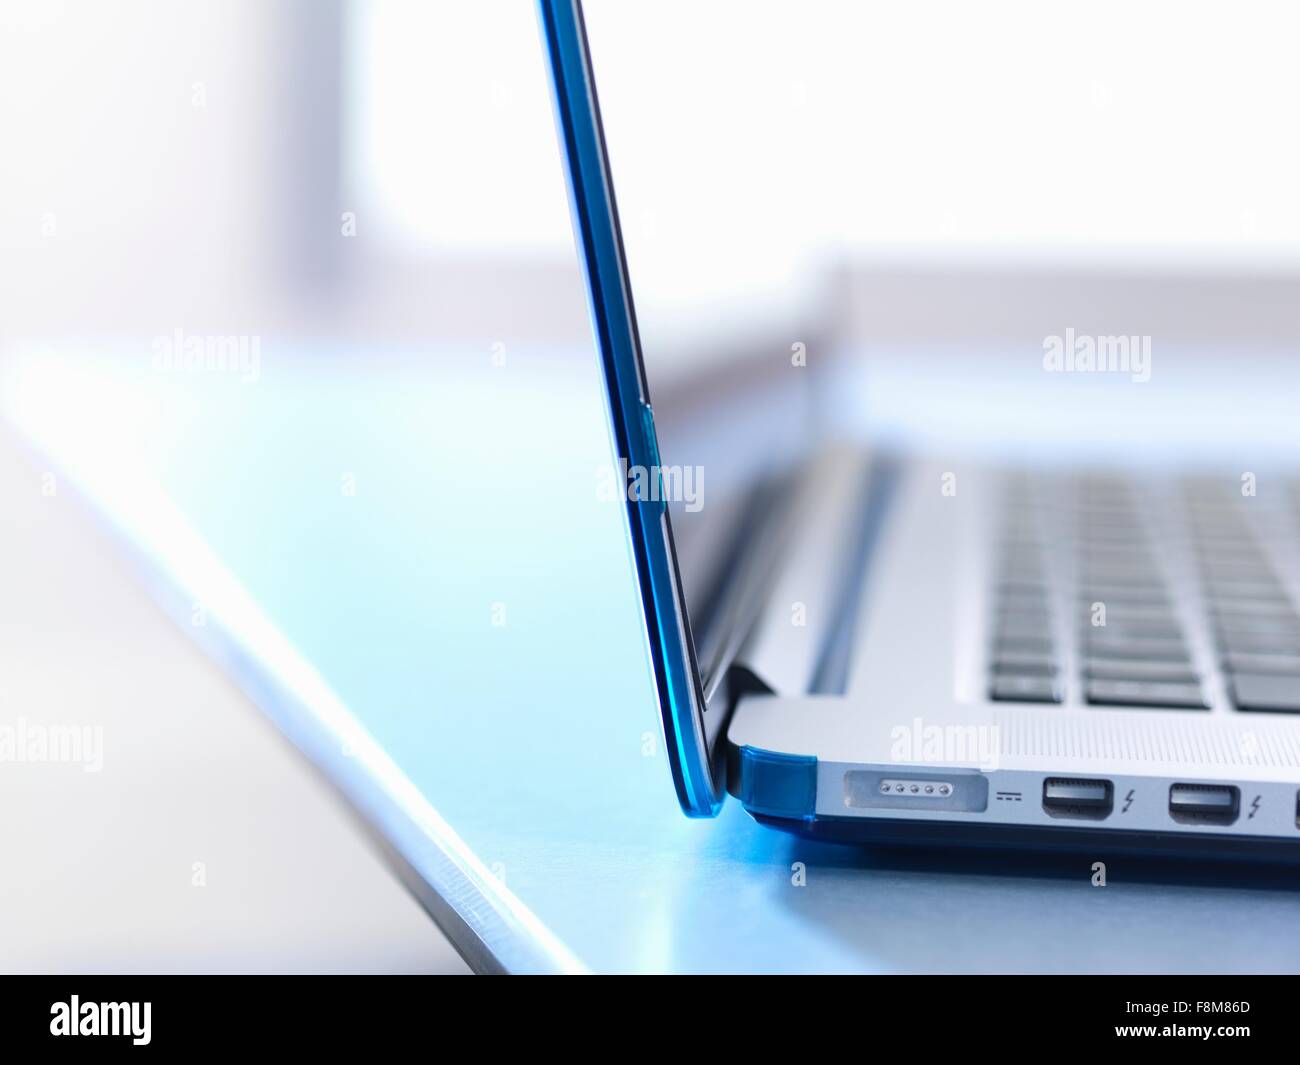 Laptop, close up Stock Photo